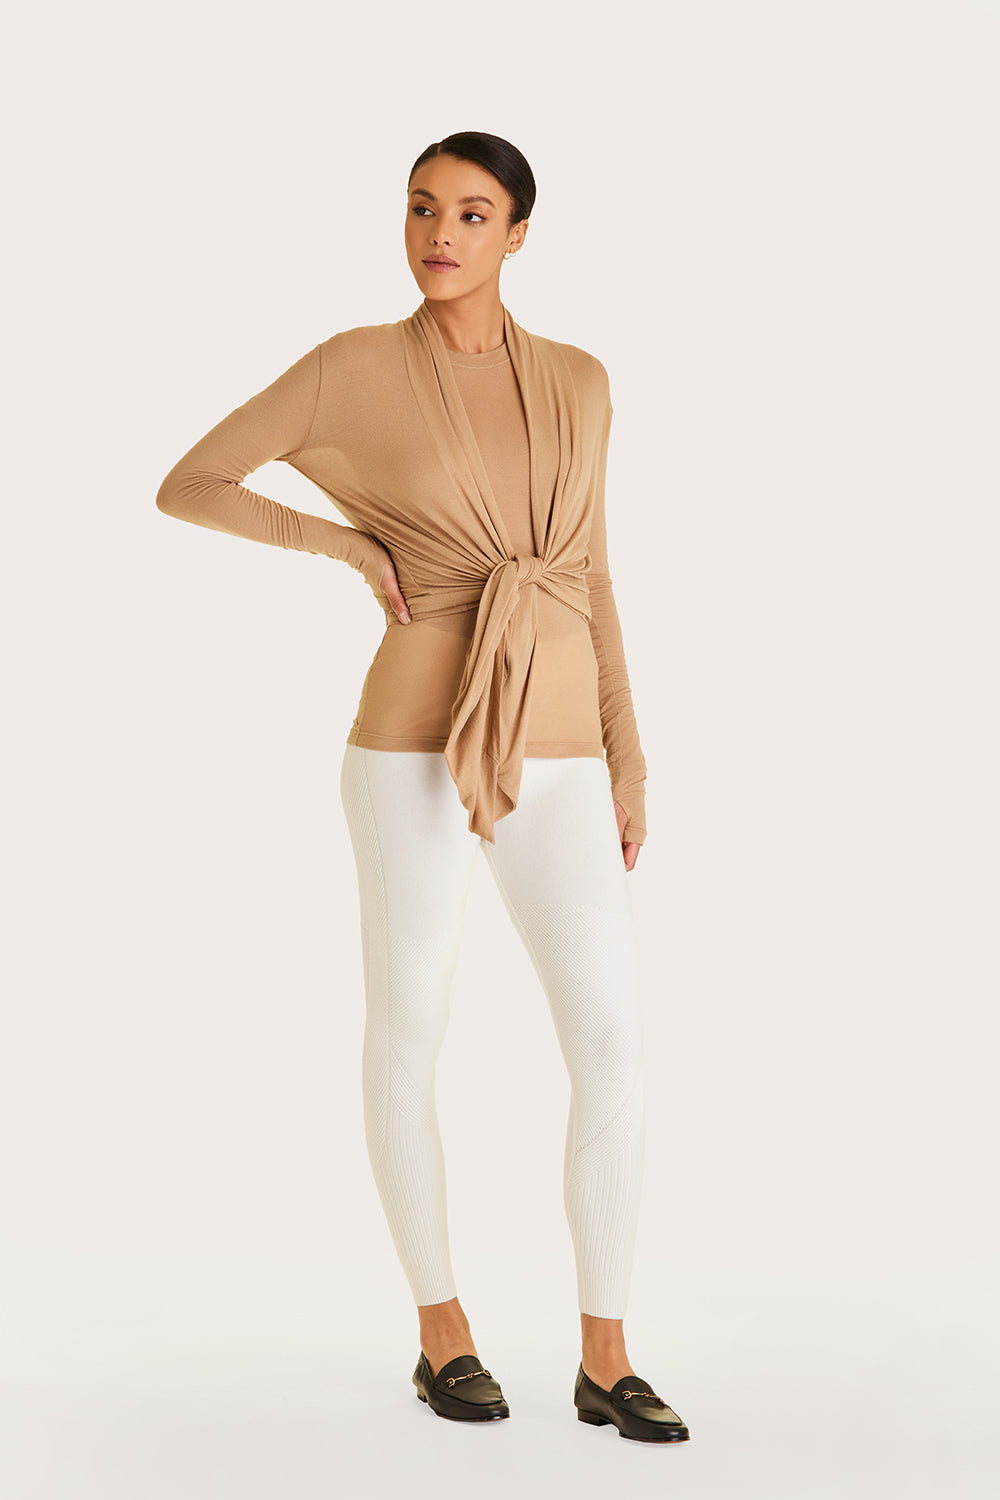 Alala women's cashmere open cardigan in beige